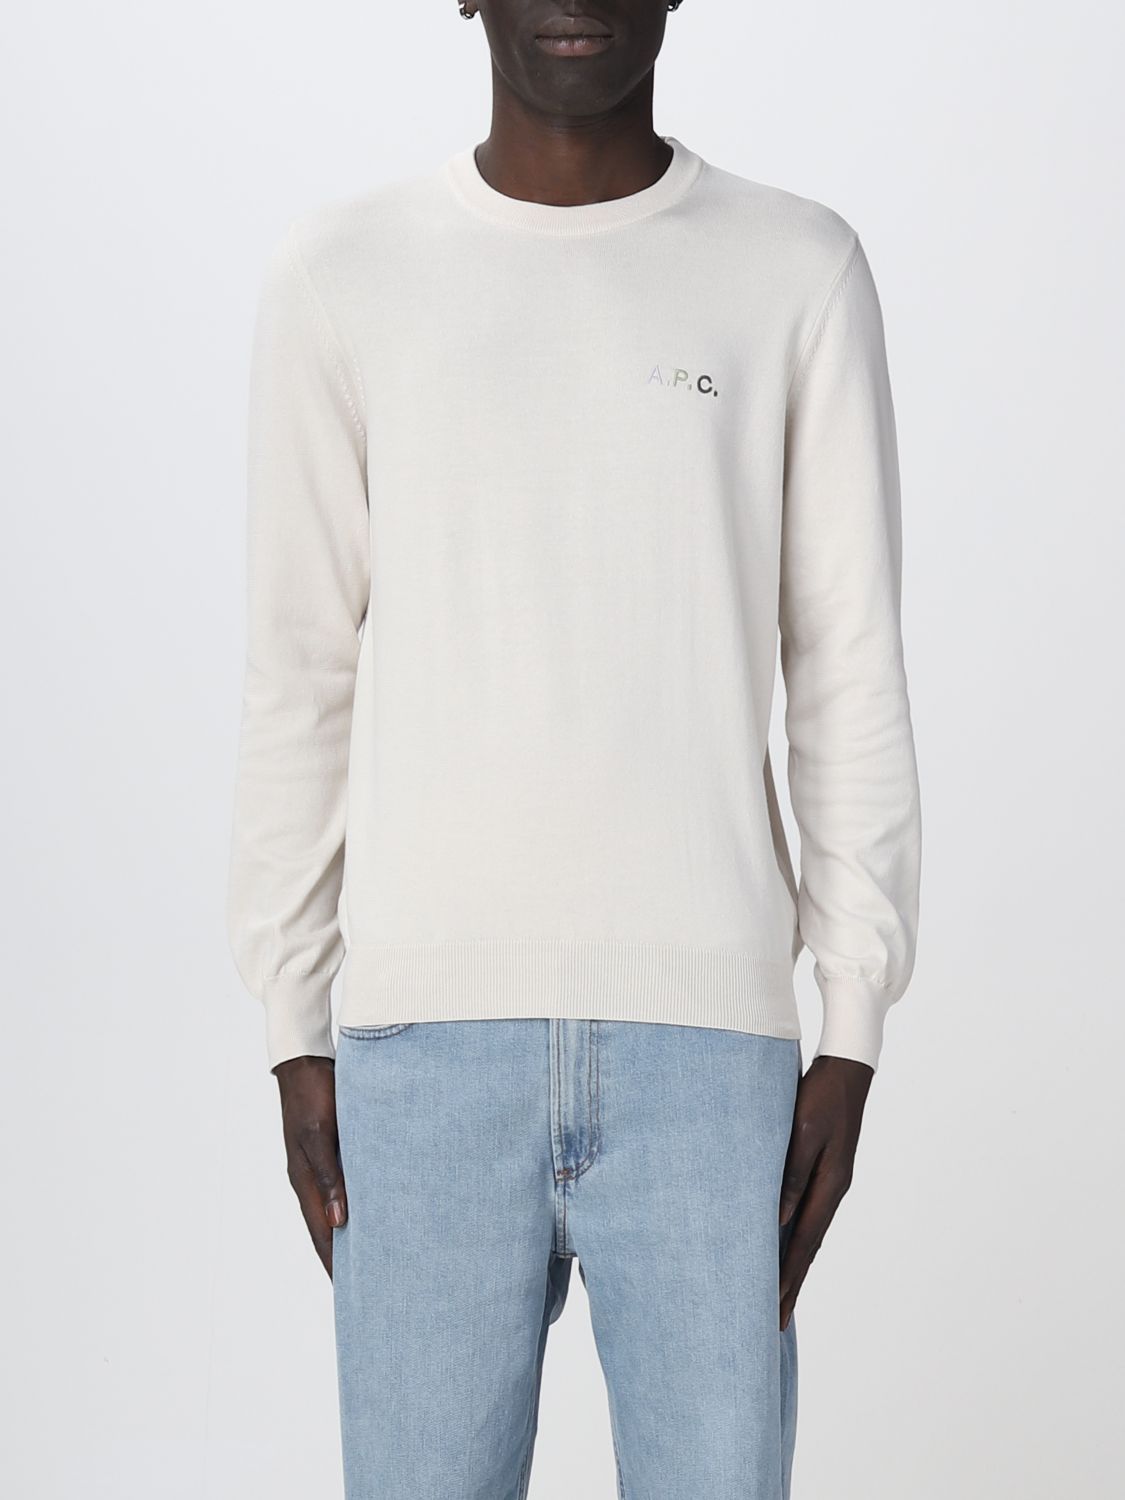 Shop Apc Sweater A.p.c. Men Color White